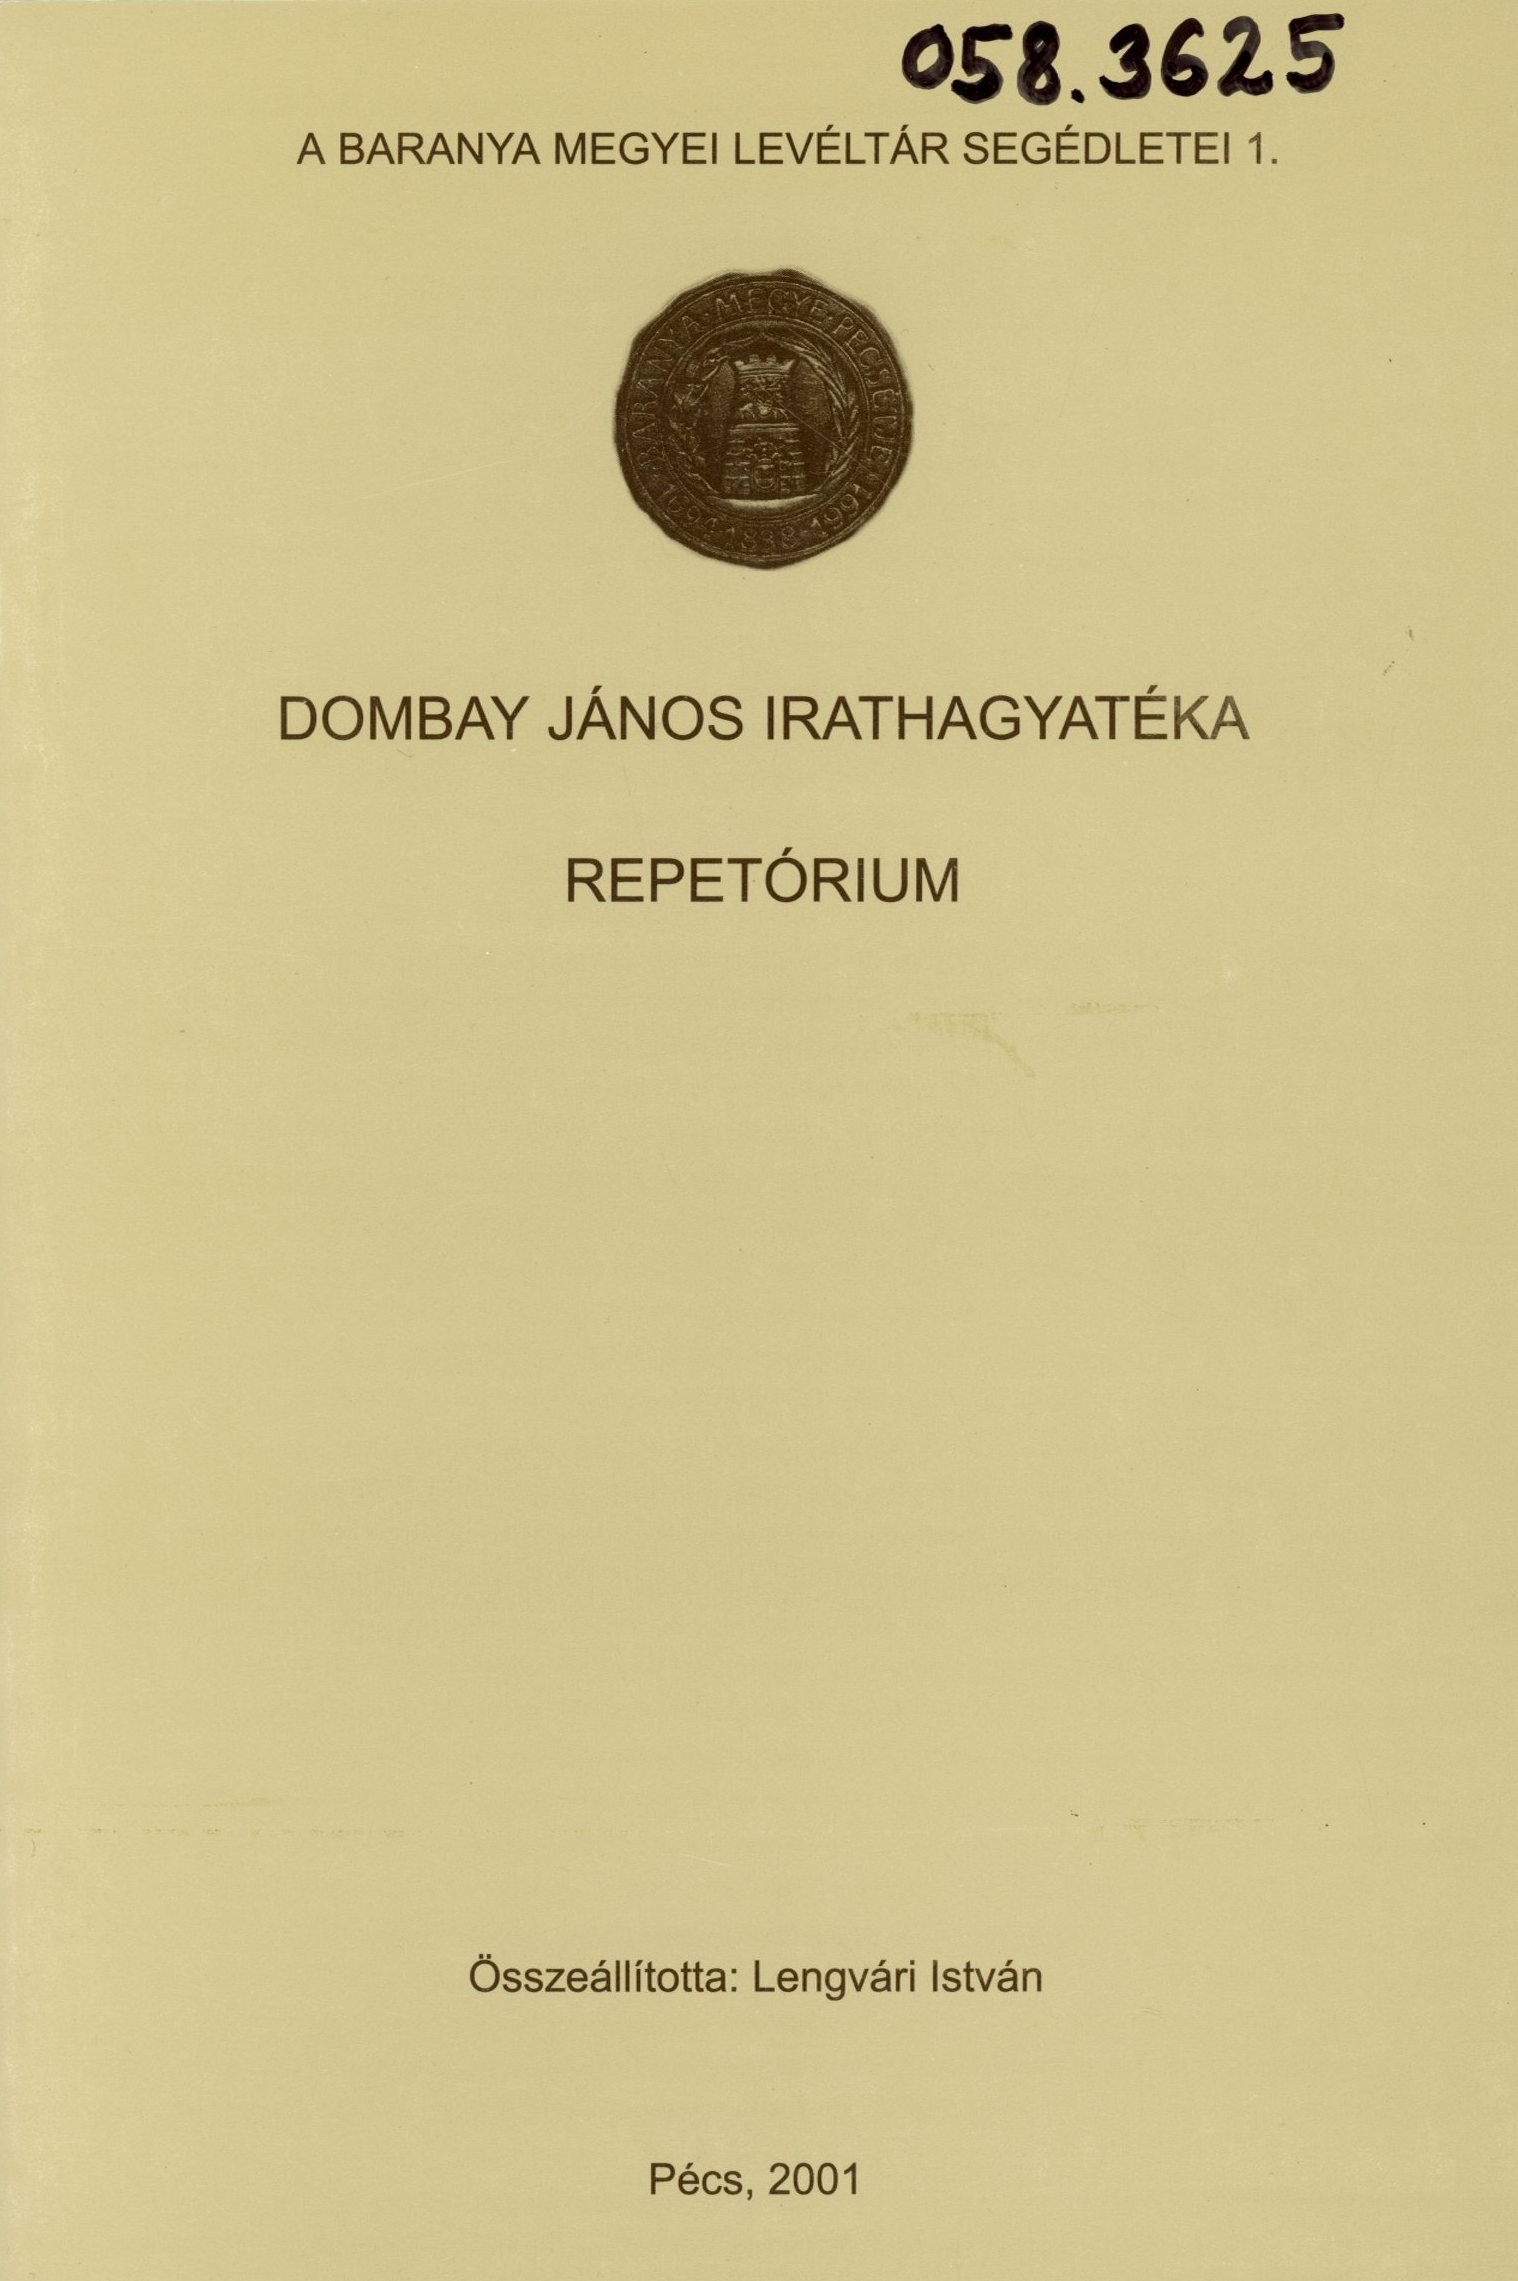 Dombay János Irathagyatéka Repetórium (Erkel Ferenc Múzeum és Könyvtár, Gyula CC BY-NC-SA)